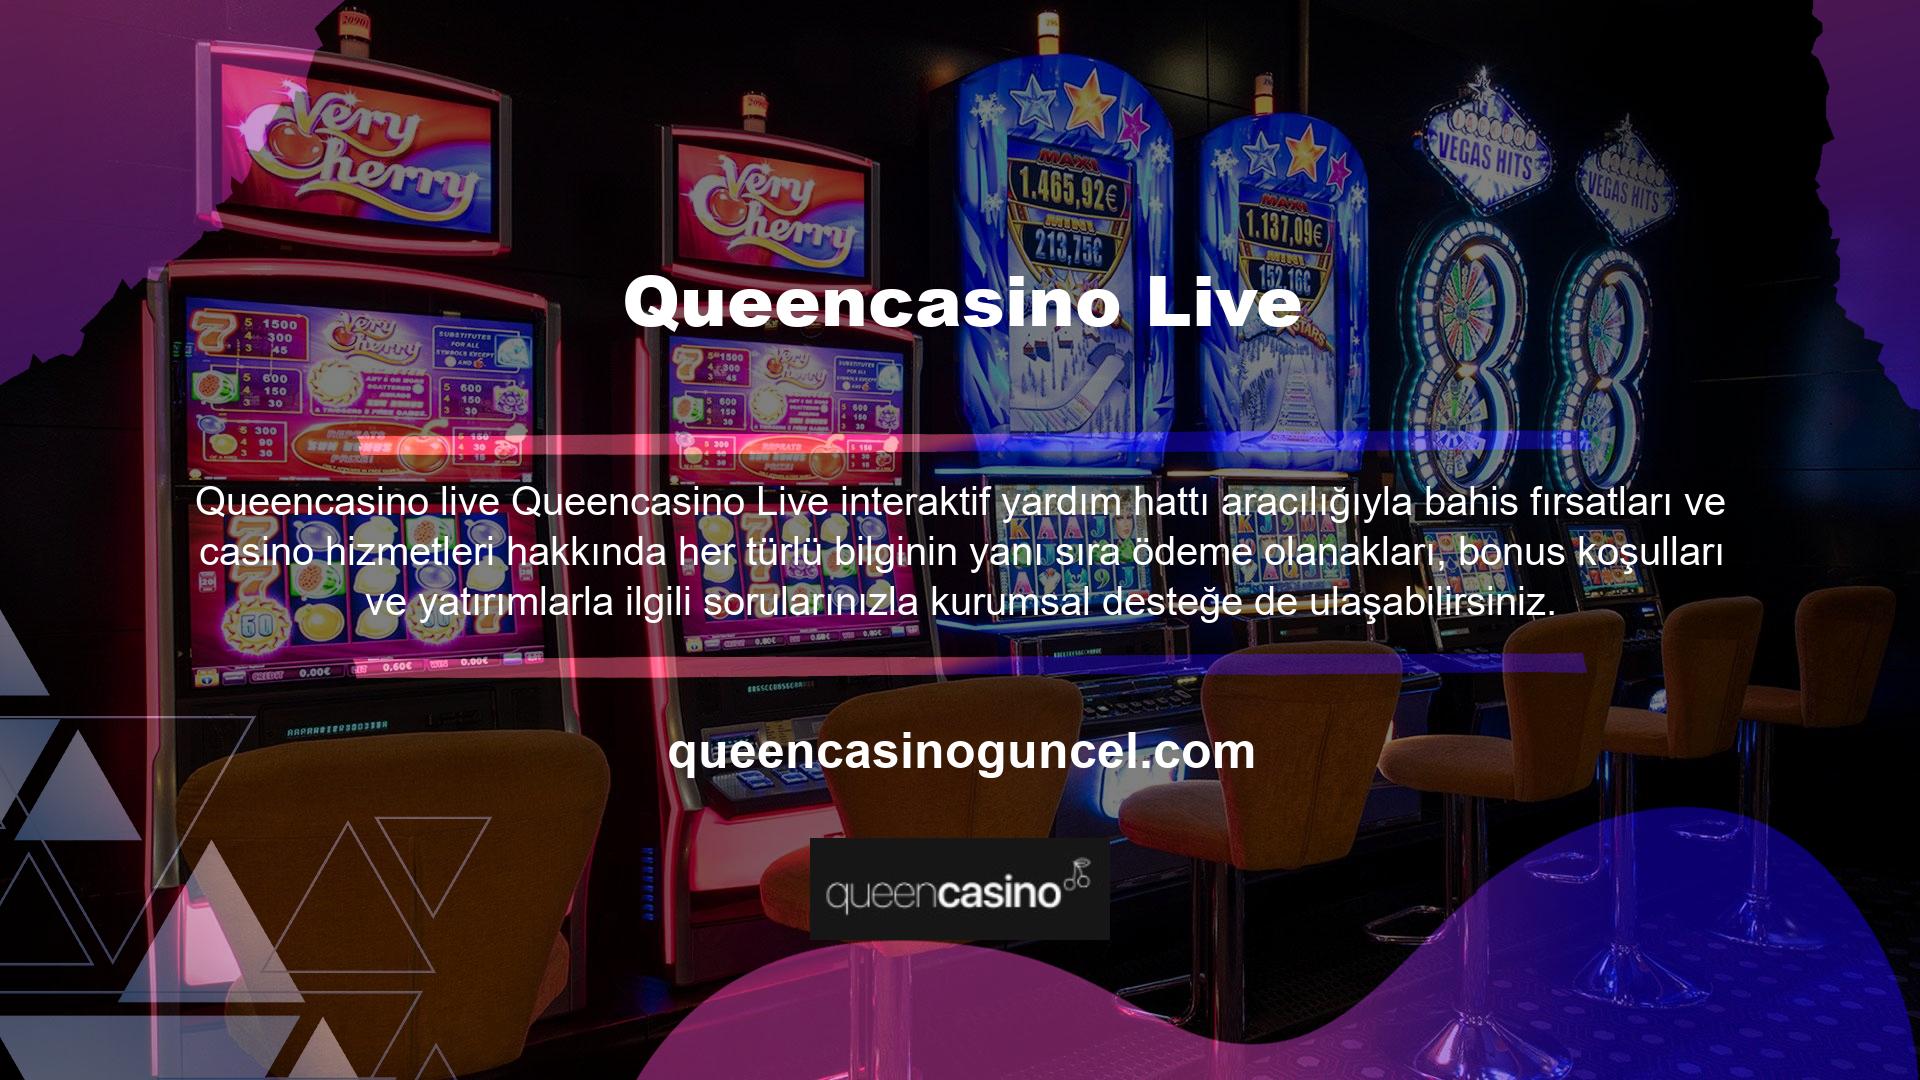 Çevrimiçi casino pazarındaki çoğu oyuncunun yayınladığı canlı sohbet ve isteğe bağlı etkileşimli kanallar aracılığıyla üyelerimize profesyonel destek sunarak, güvenle işlem yapmalarına ve olası sorunları çözmelerine olanak sağlıyoruz